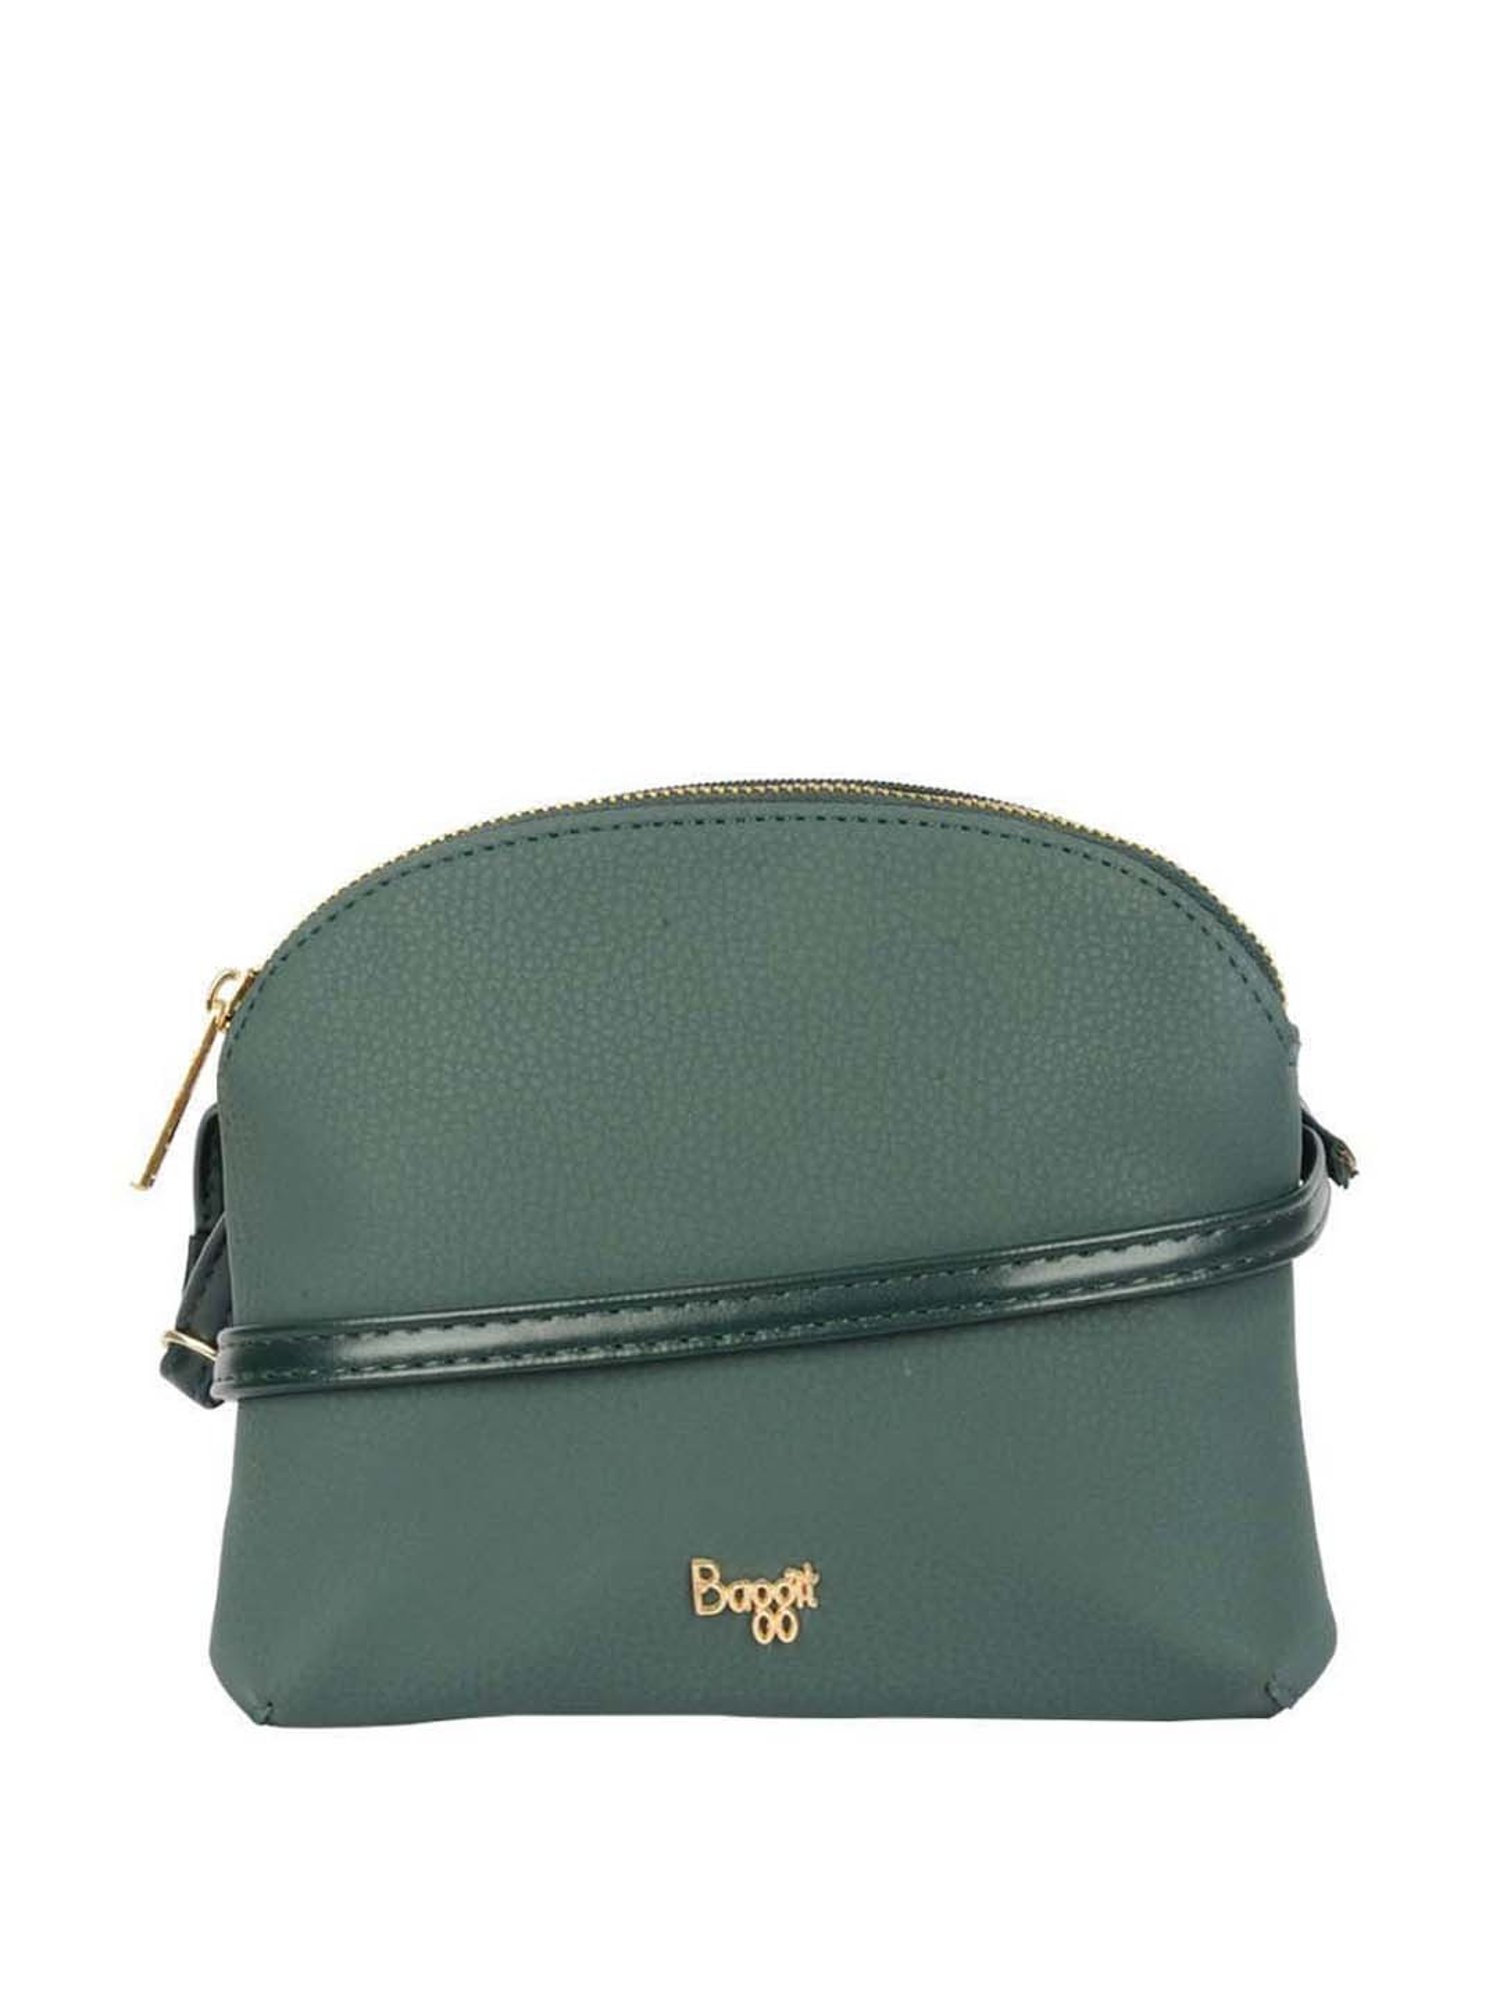 Buy Baggit Bags Online - Best Deals – Justdial Shop Online.